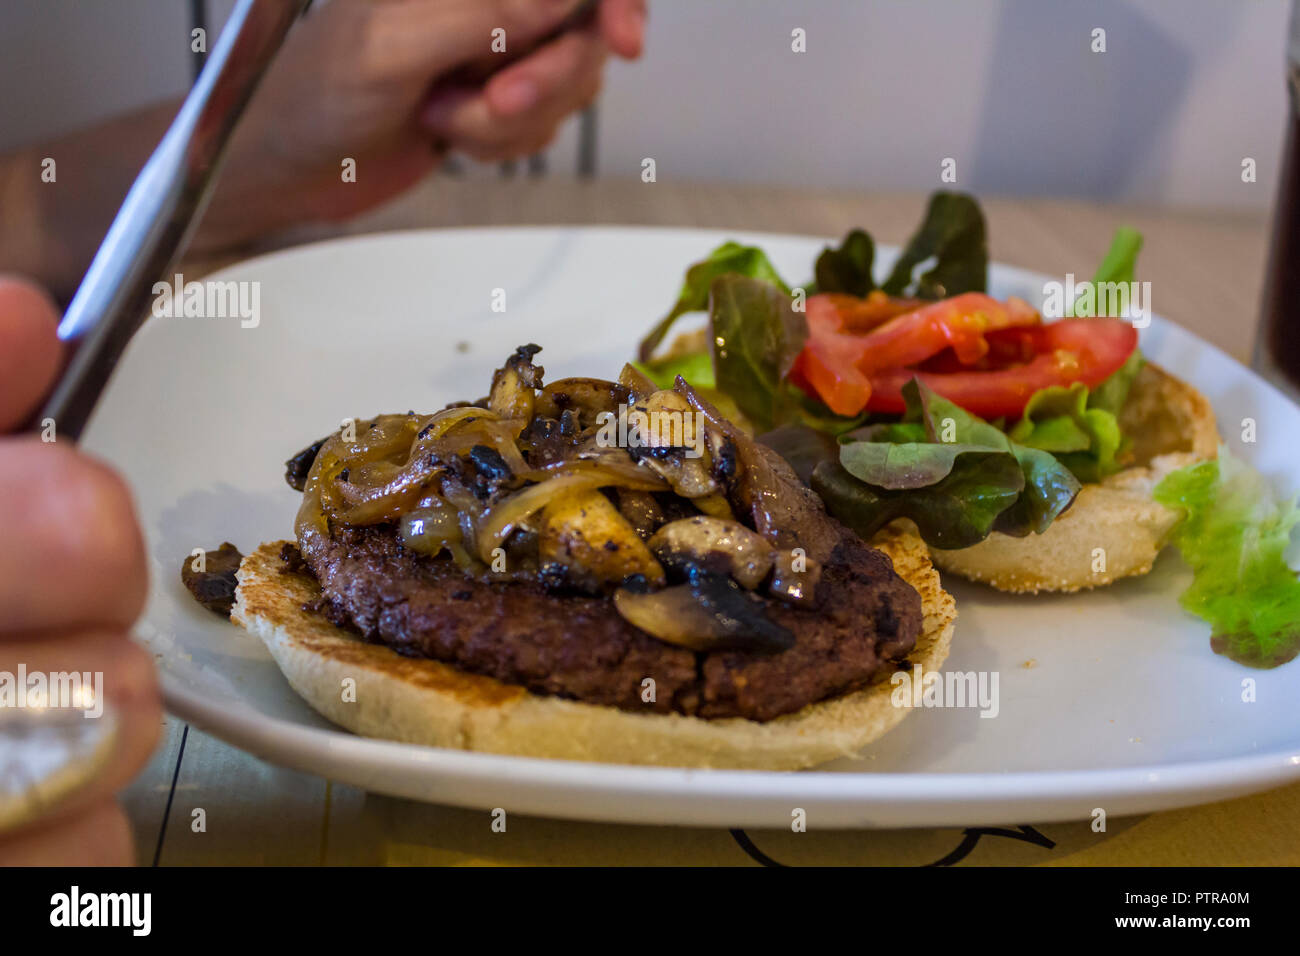 Ein Hamburger auf dem Teller Essen mit Besteck Stockfotografie - Alamy